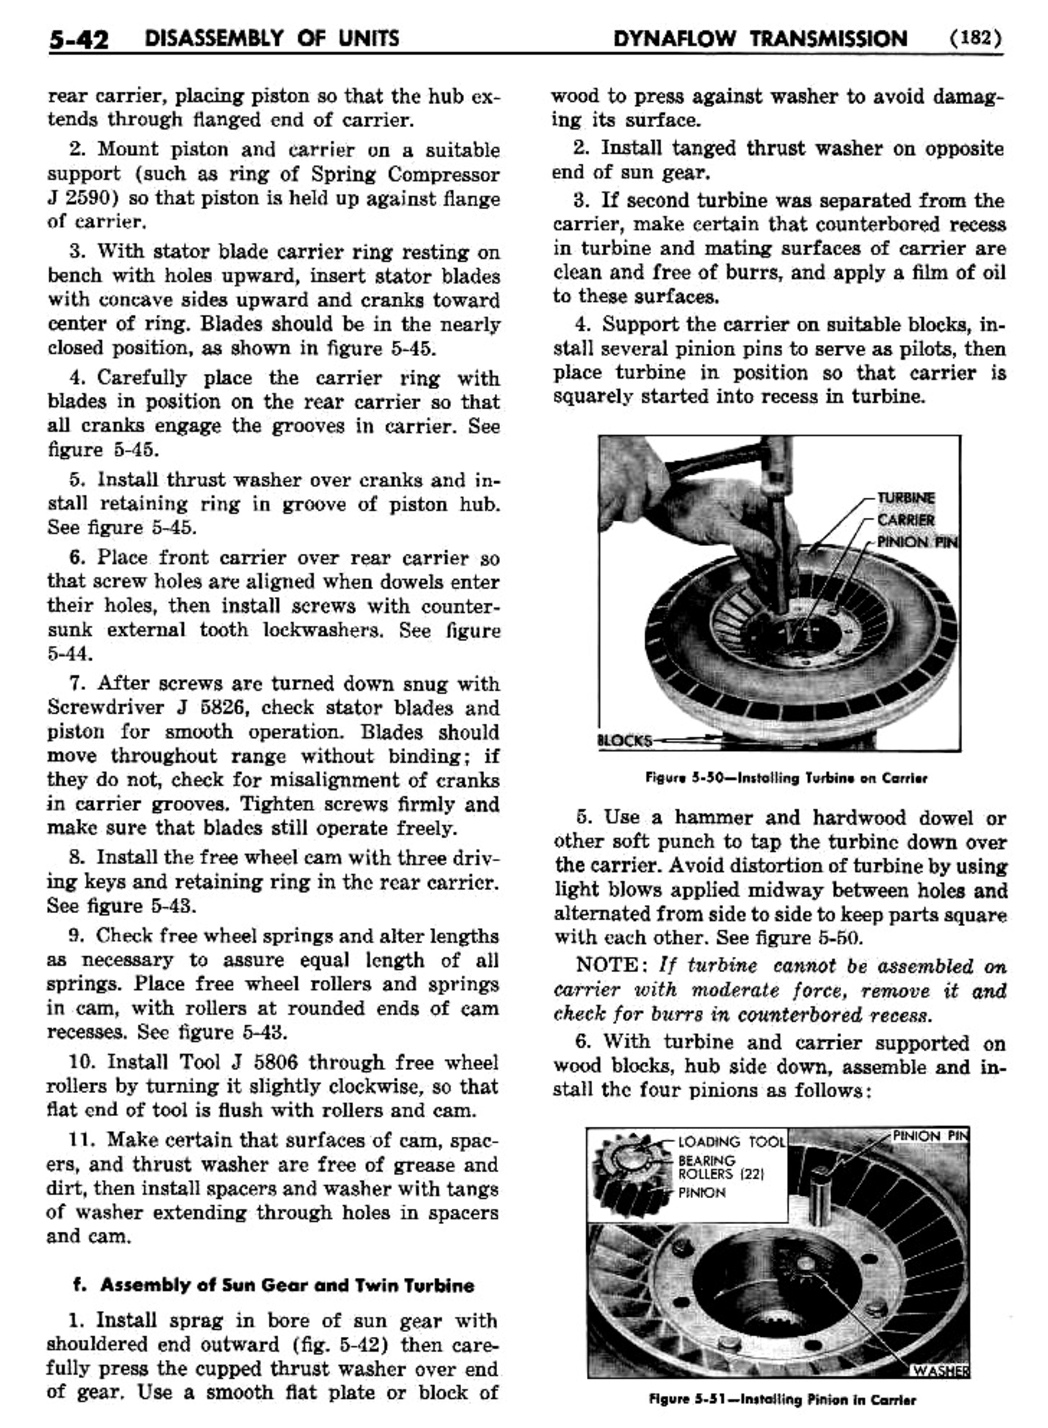 n_06 1955 Buick Shop Manual - Dynaflow-042-042.jpg